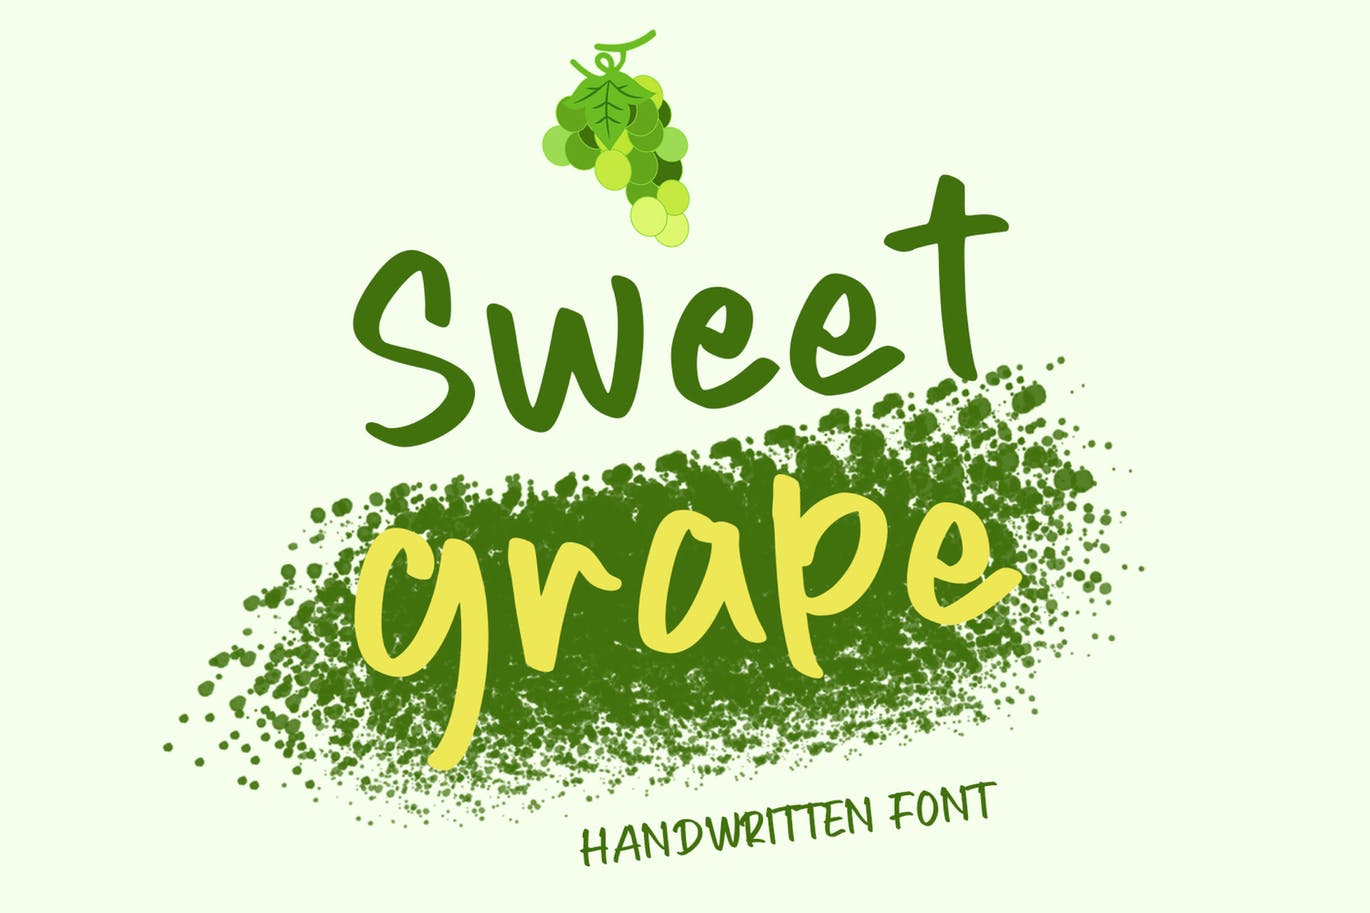 绿色产品包装手写字体素材 Sweet Grape 设计素材 第1张